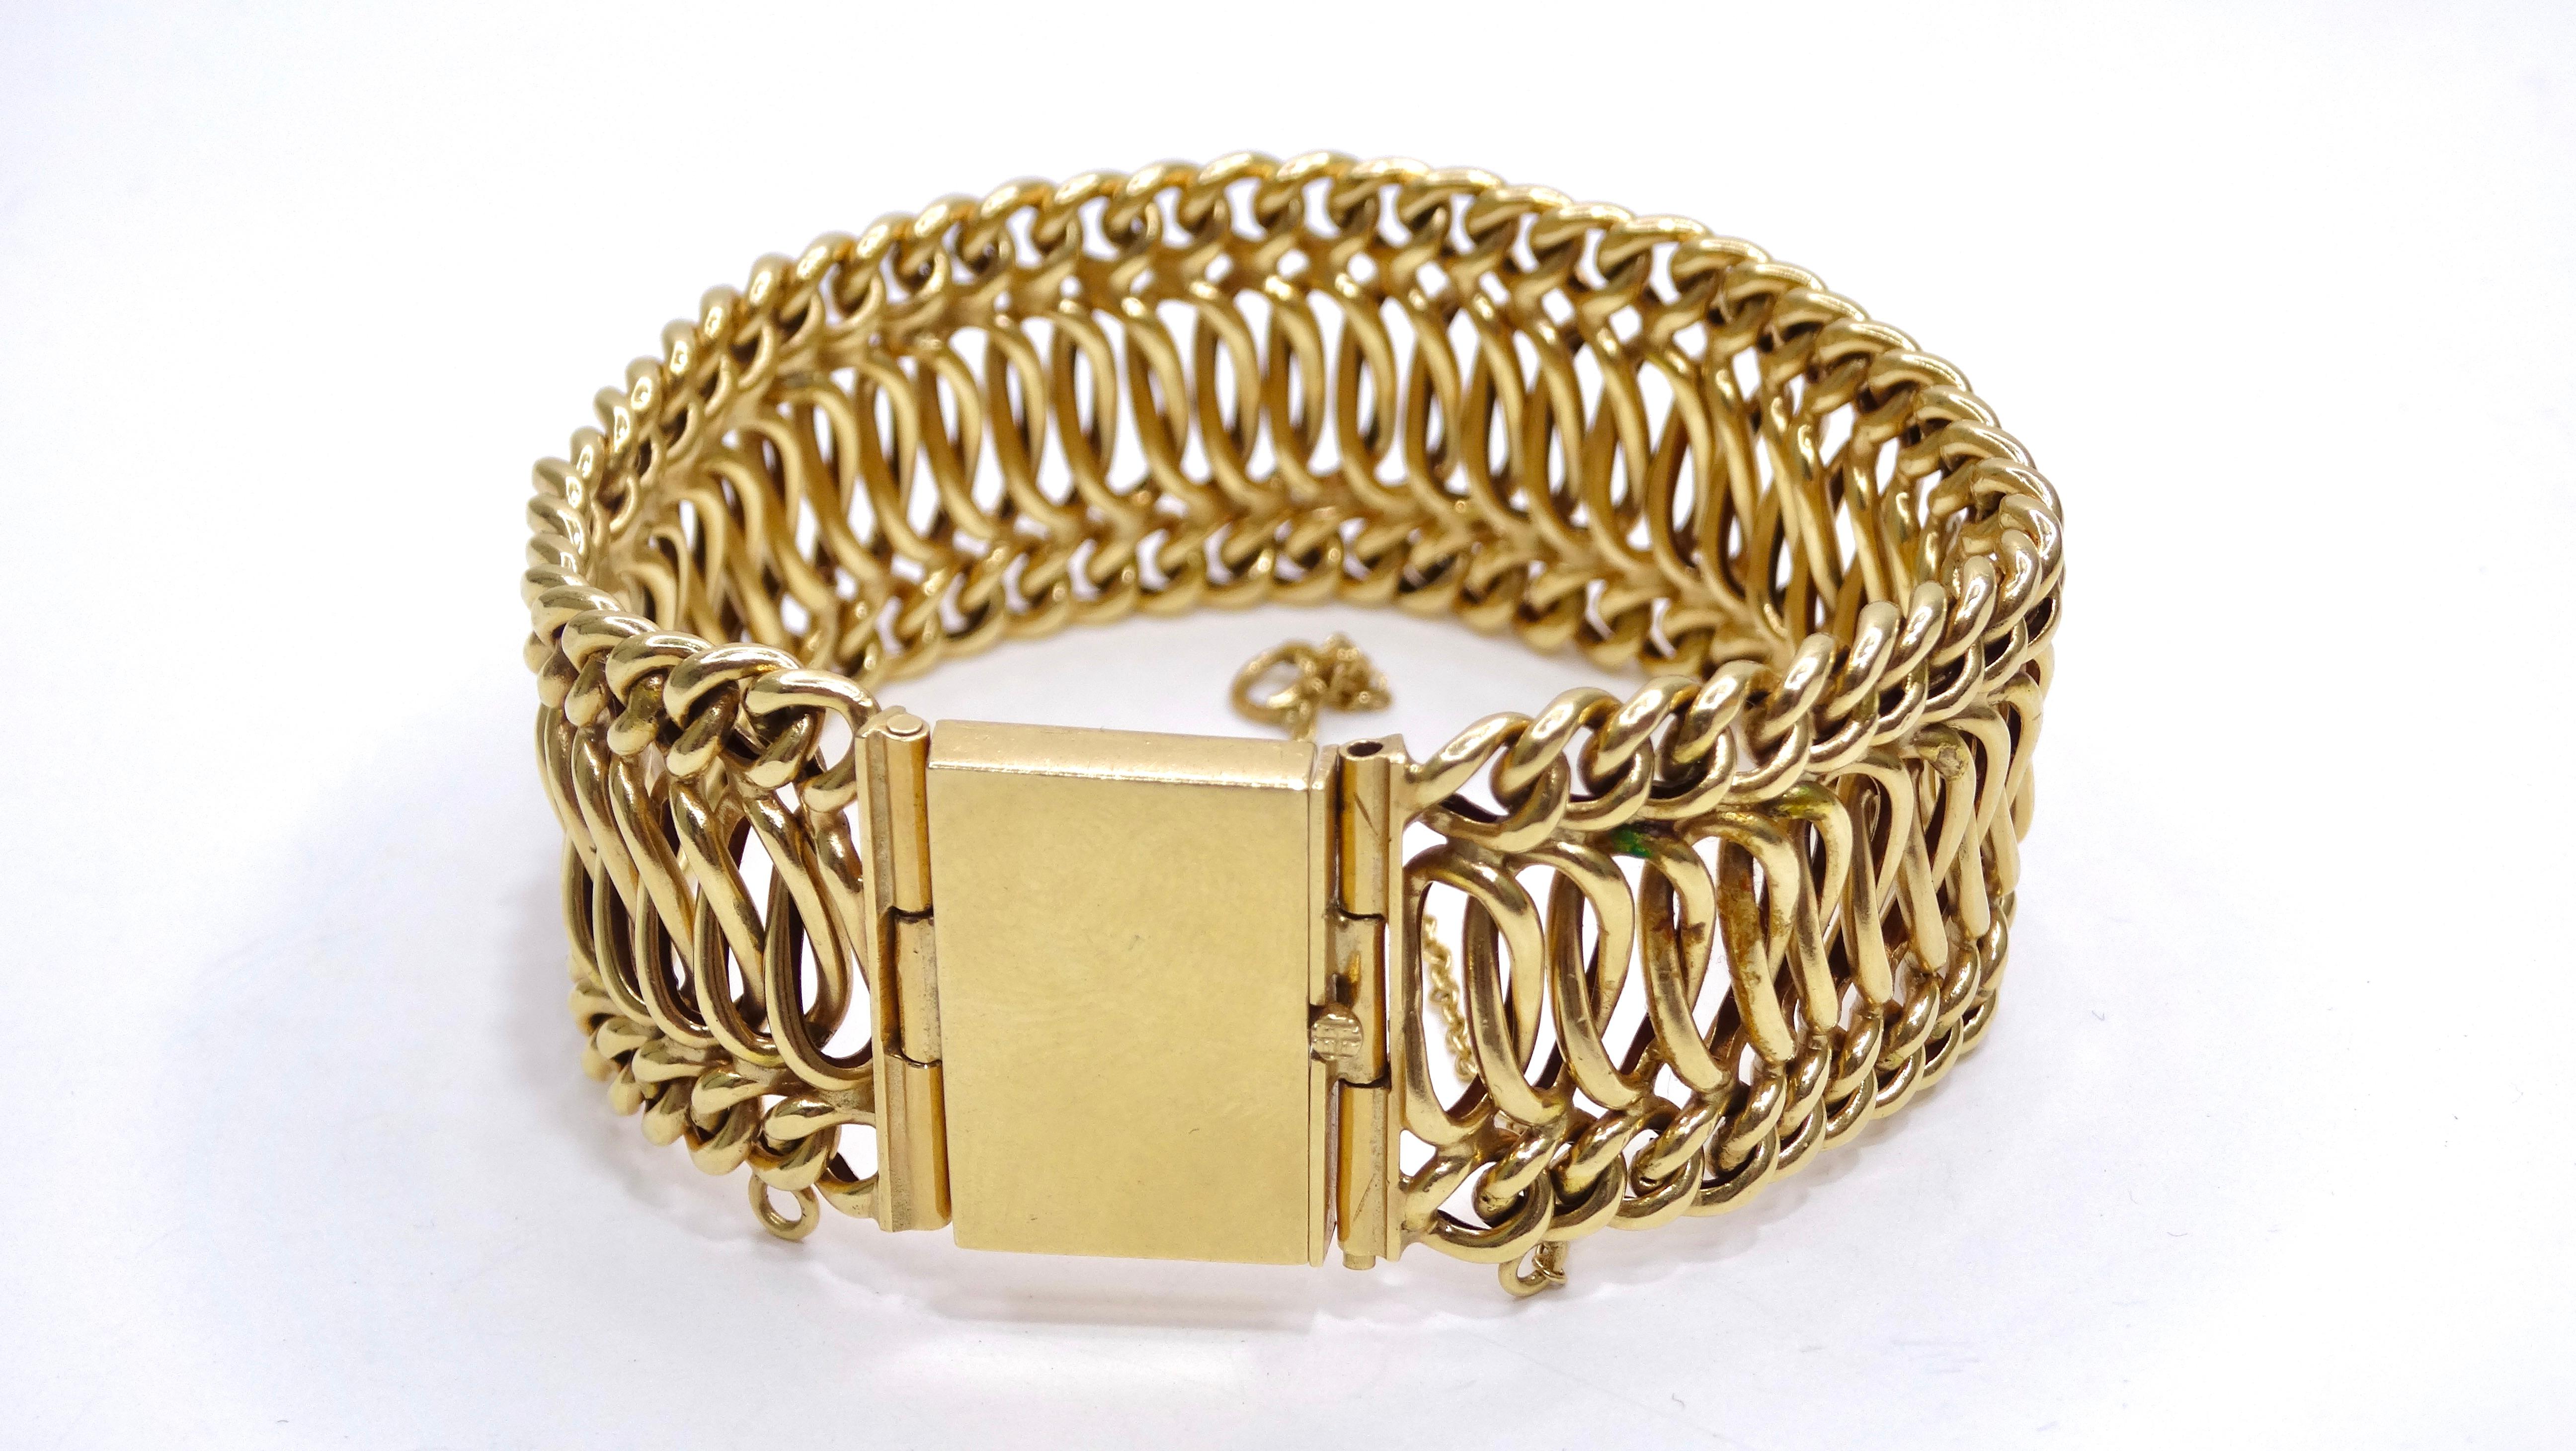 Ce bracelet à chaînes datant des années 1950 donne une nouvelle dimension au bracelet à chaînes en or de votre tiroir. Les détails de ce bracelet sont quelque chose à écrire à la maison, car il possède des tonnes de métal tissé complexe. Pairez ce